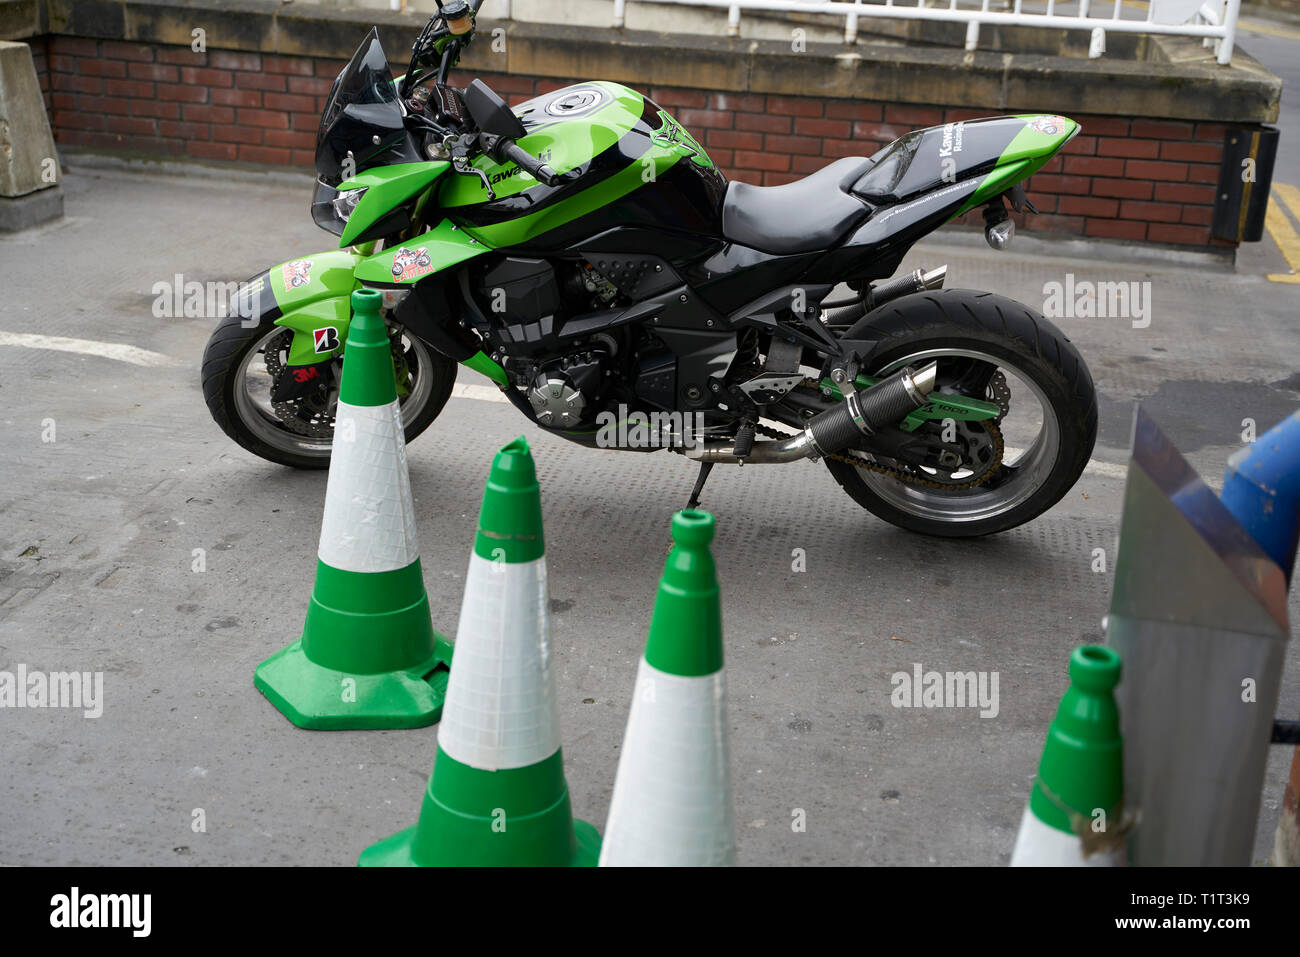 Moto verte avec cônes verts Banque D'Images